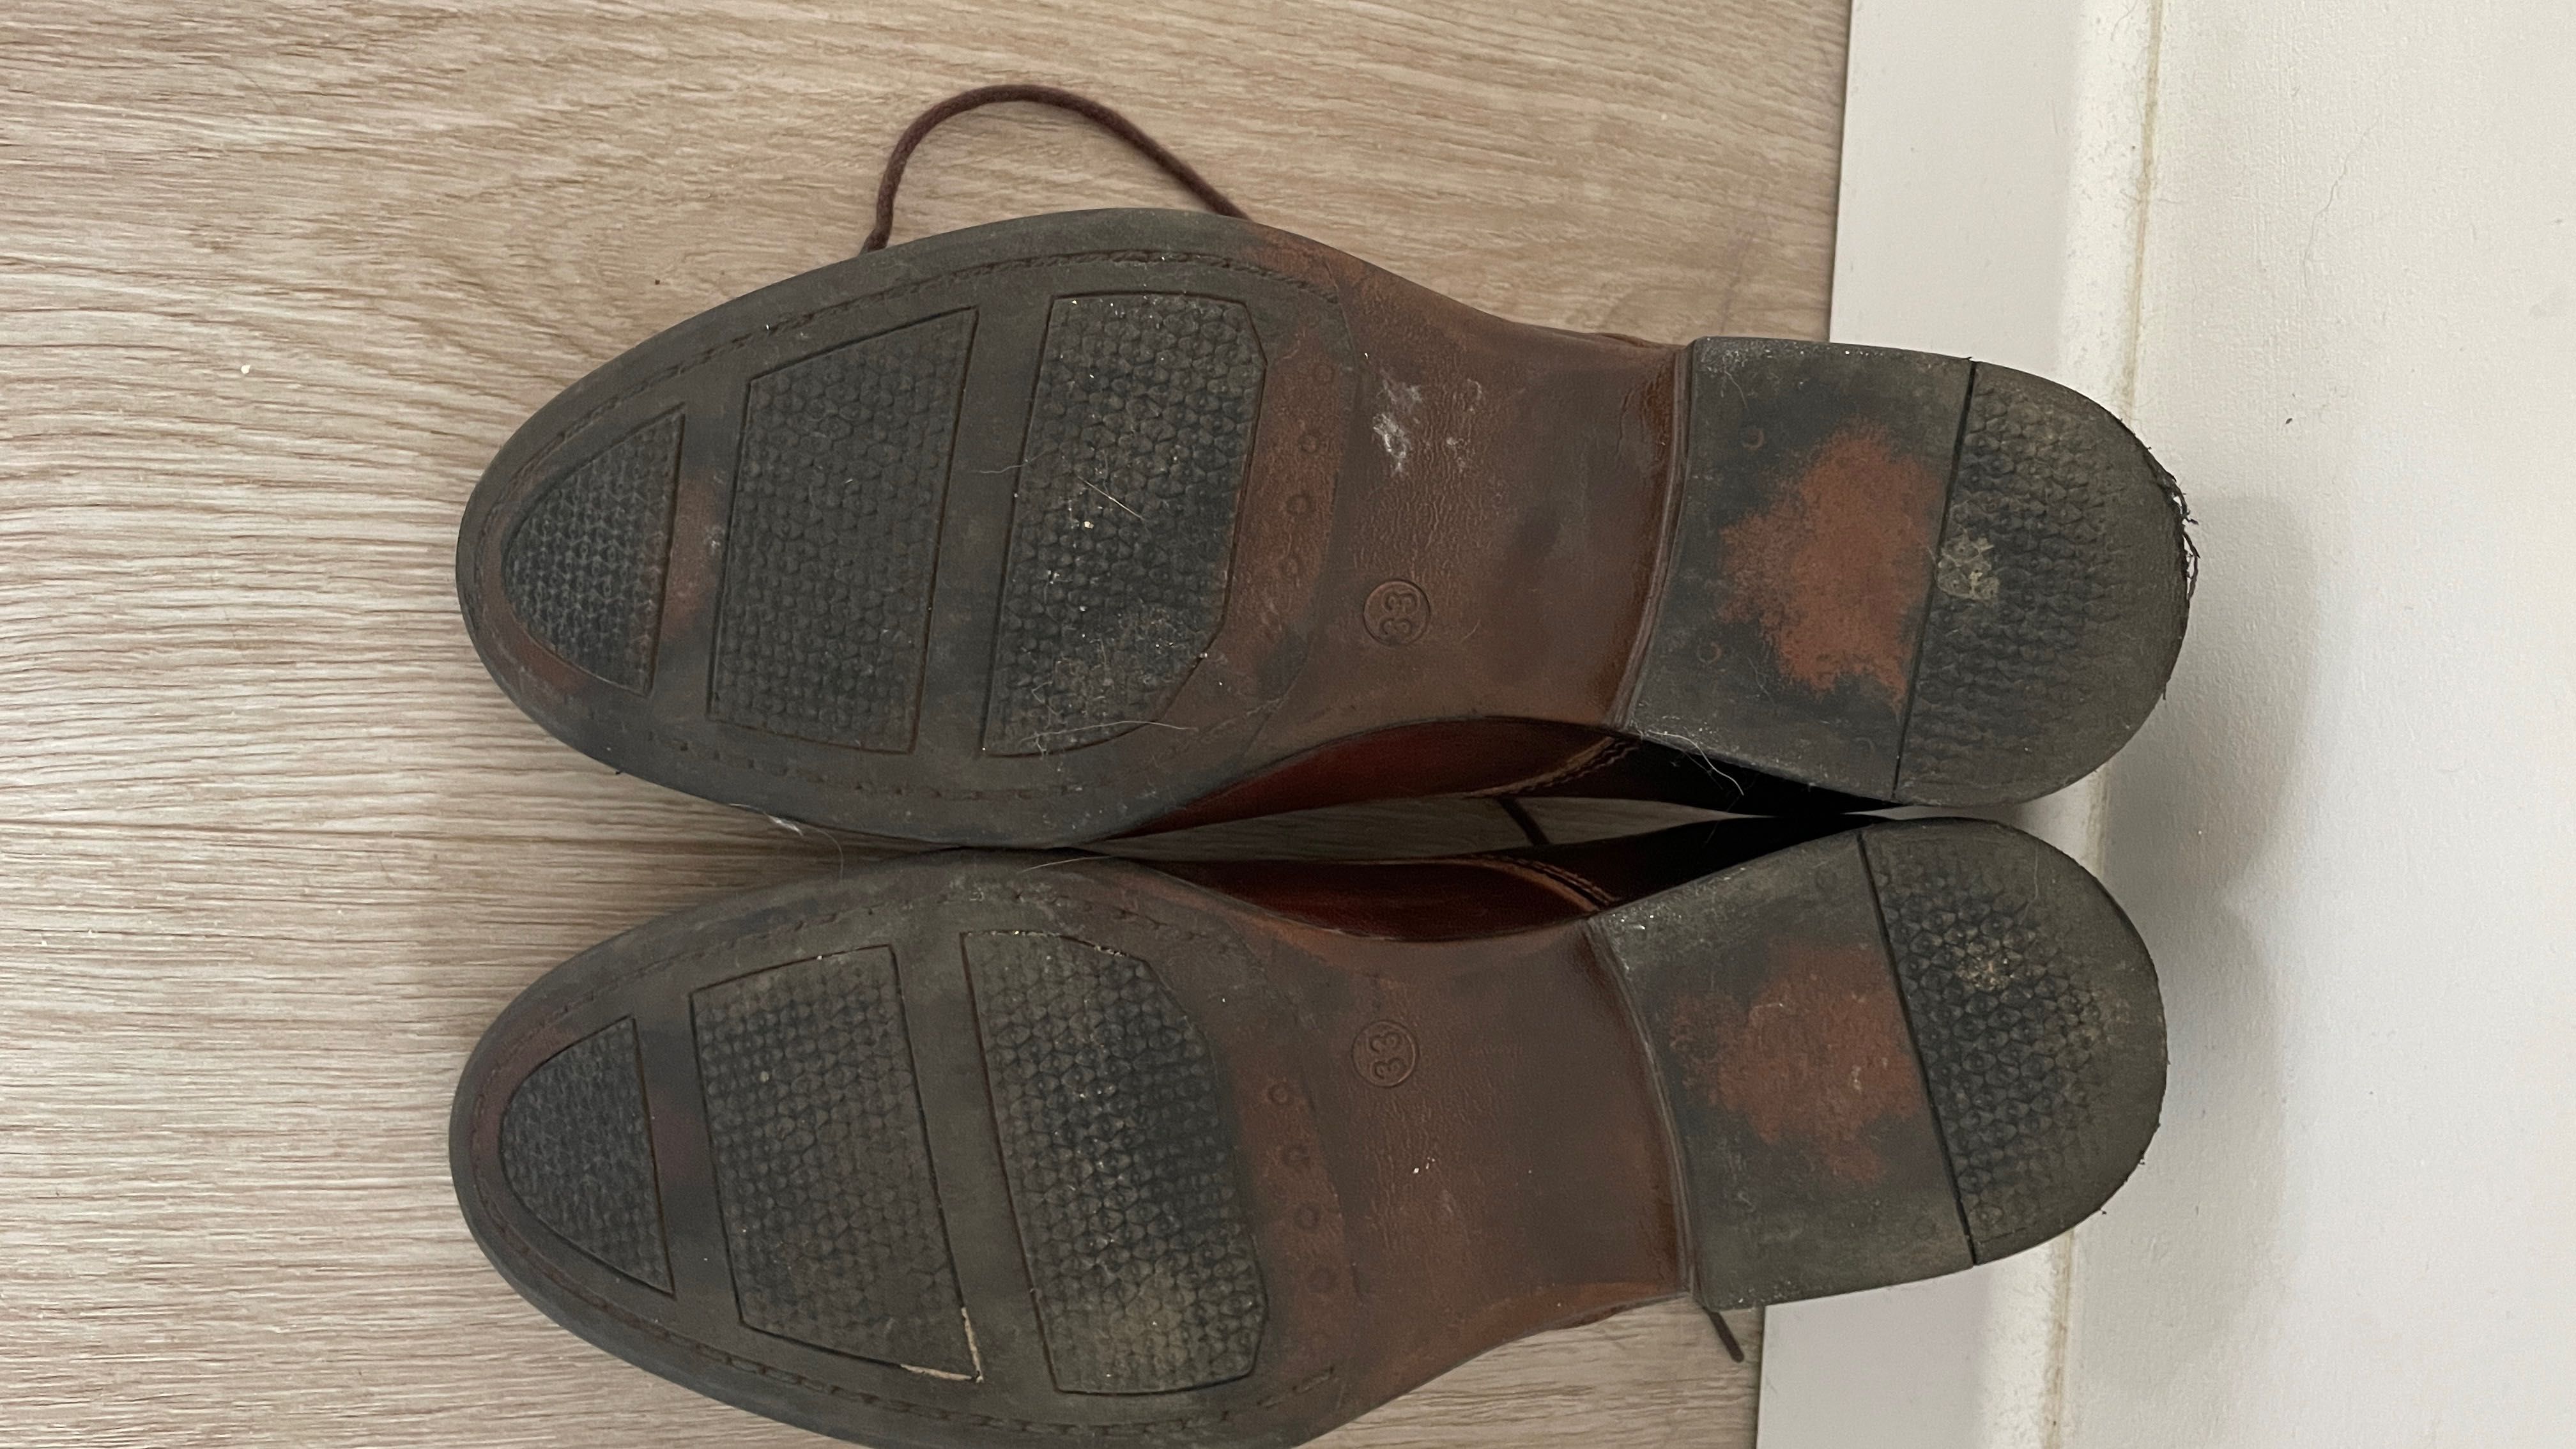 Buty pantofle chłopięce brązowe 22 cm